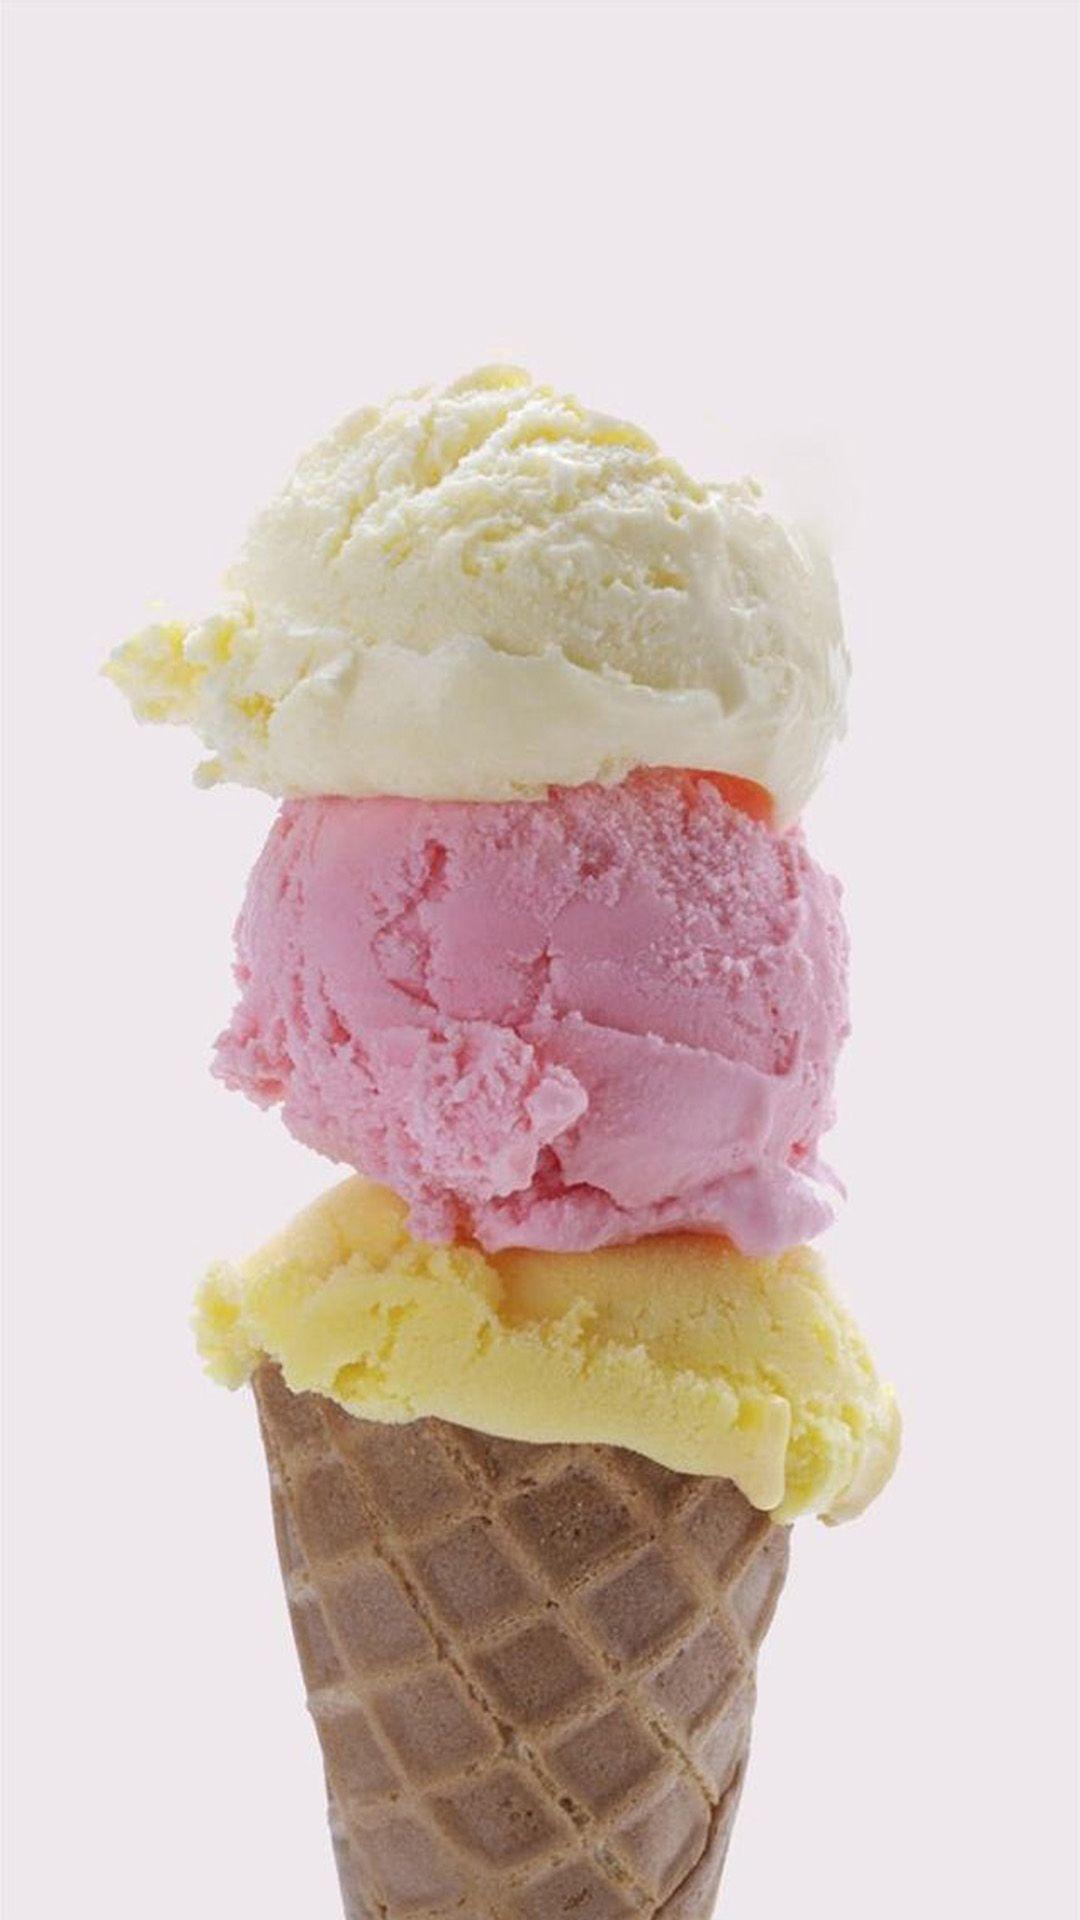 Ice Cream Cone IPhone Wallpaper. Ice Cream Wallpaper Iphone, Ice Cream Wallpaper, Summer Ice Cream